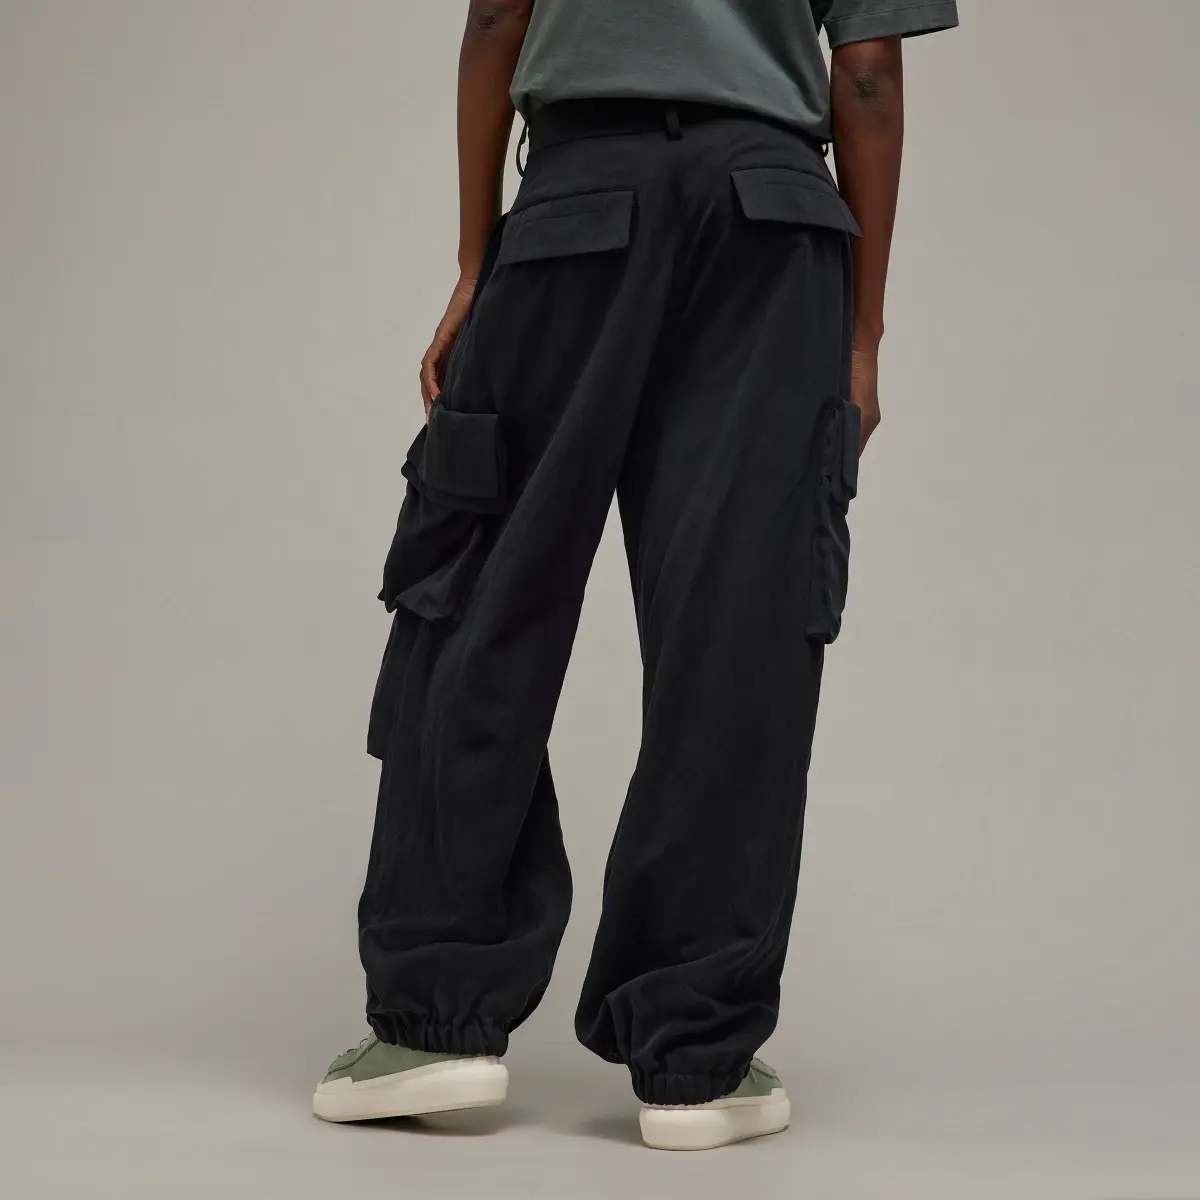 Adidas Y-3 Cuffed Cargo Trousers. 3